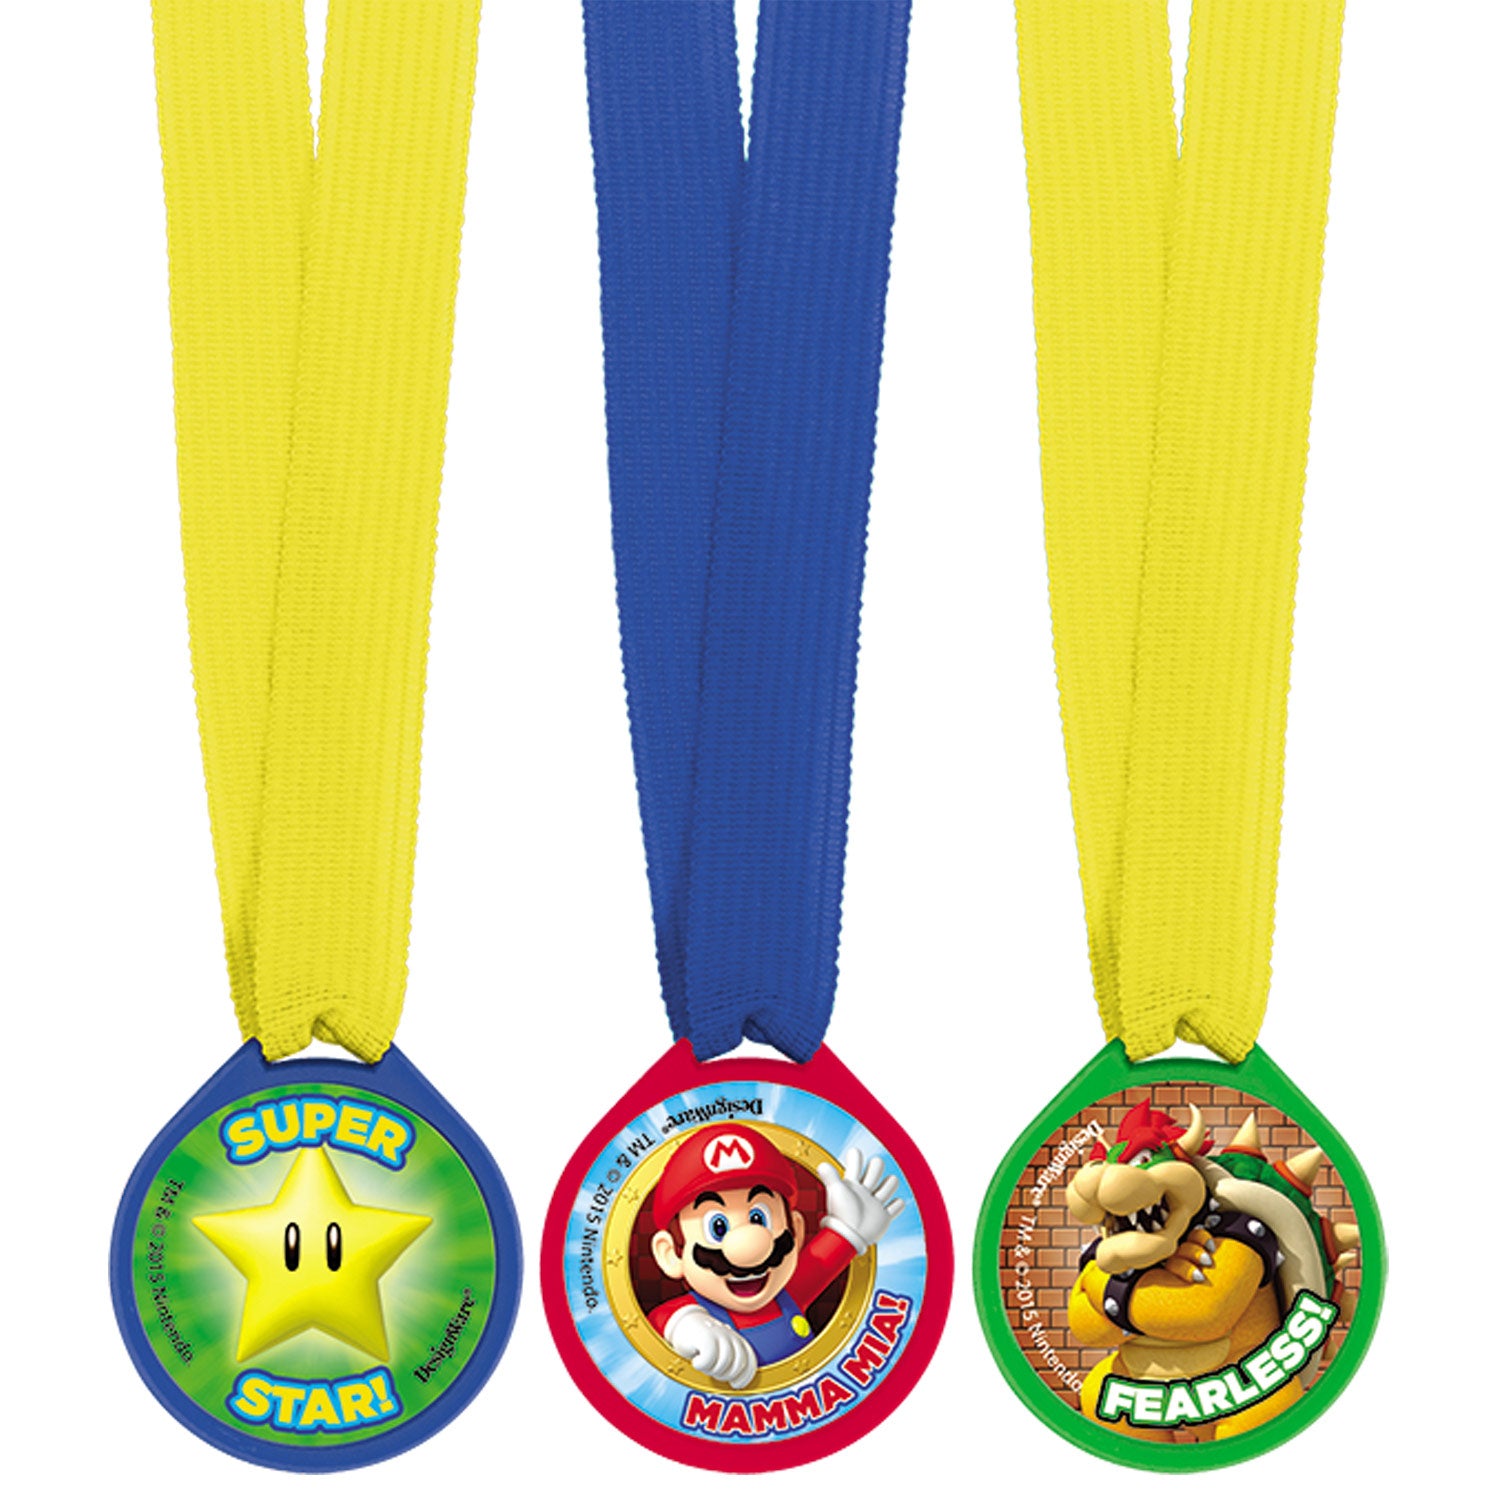 Super Mario Award Medals 12pcs